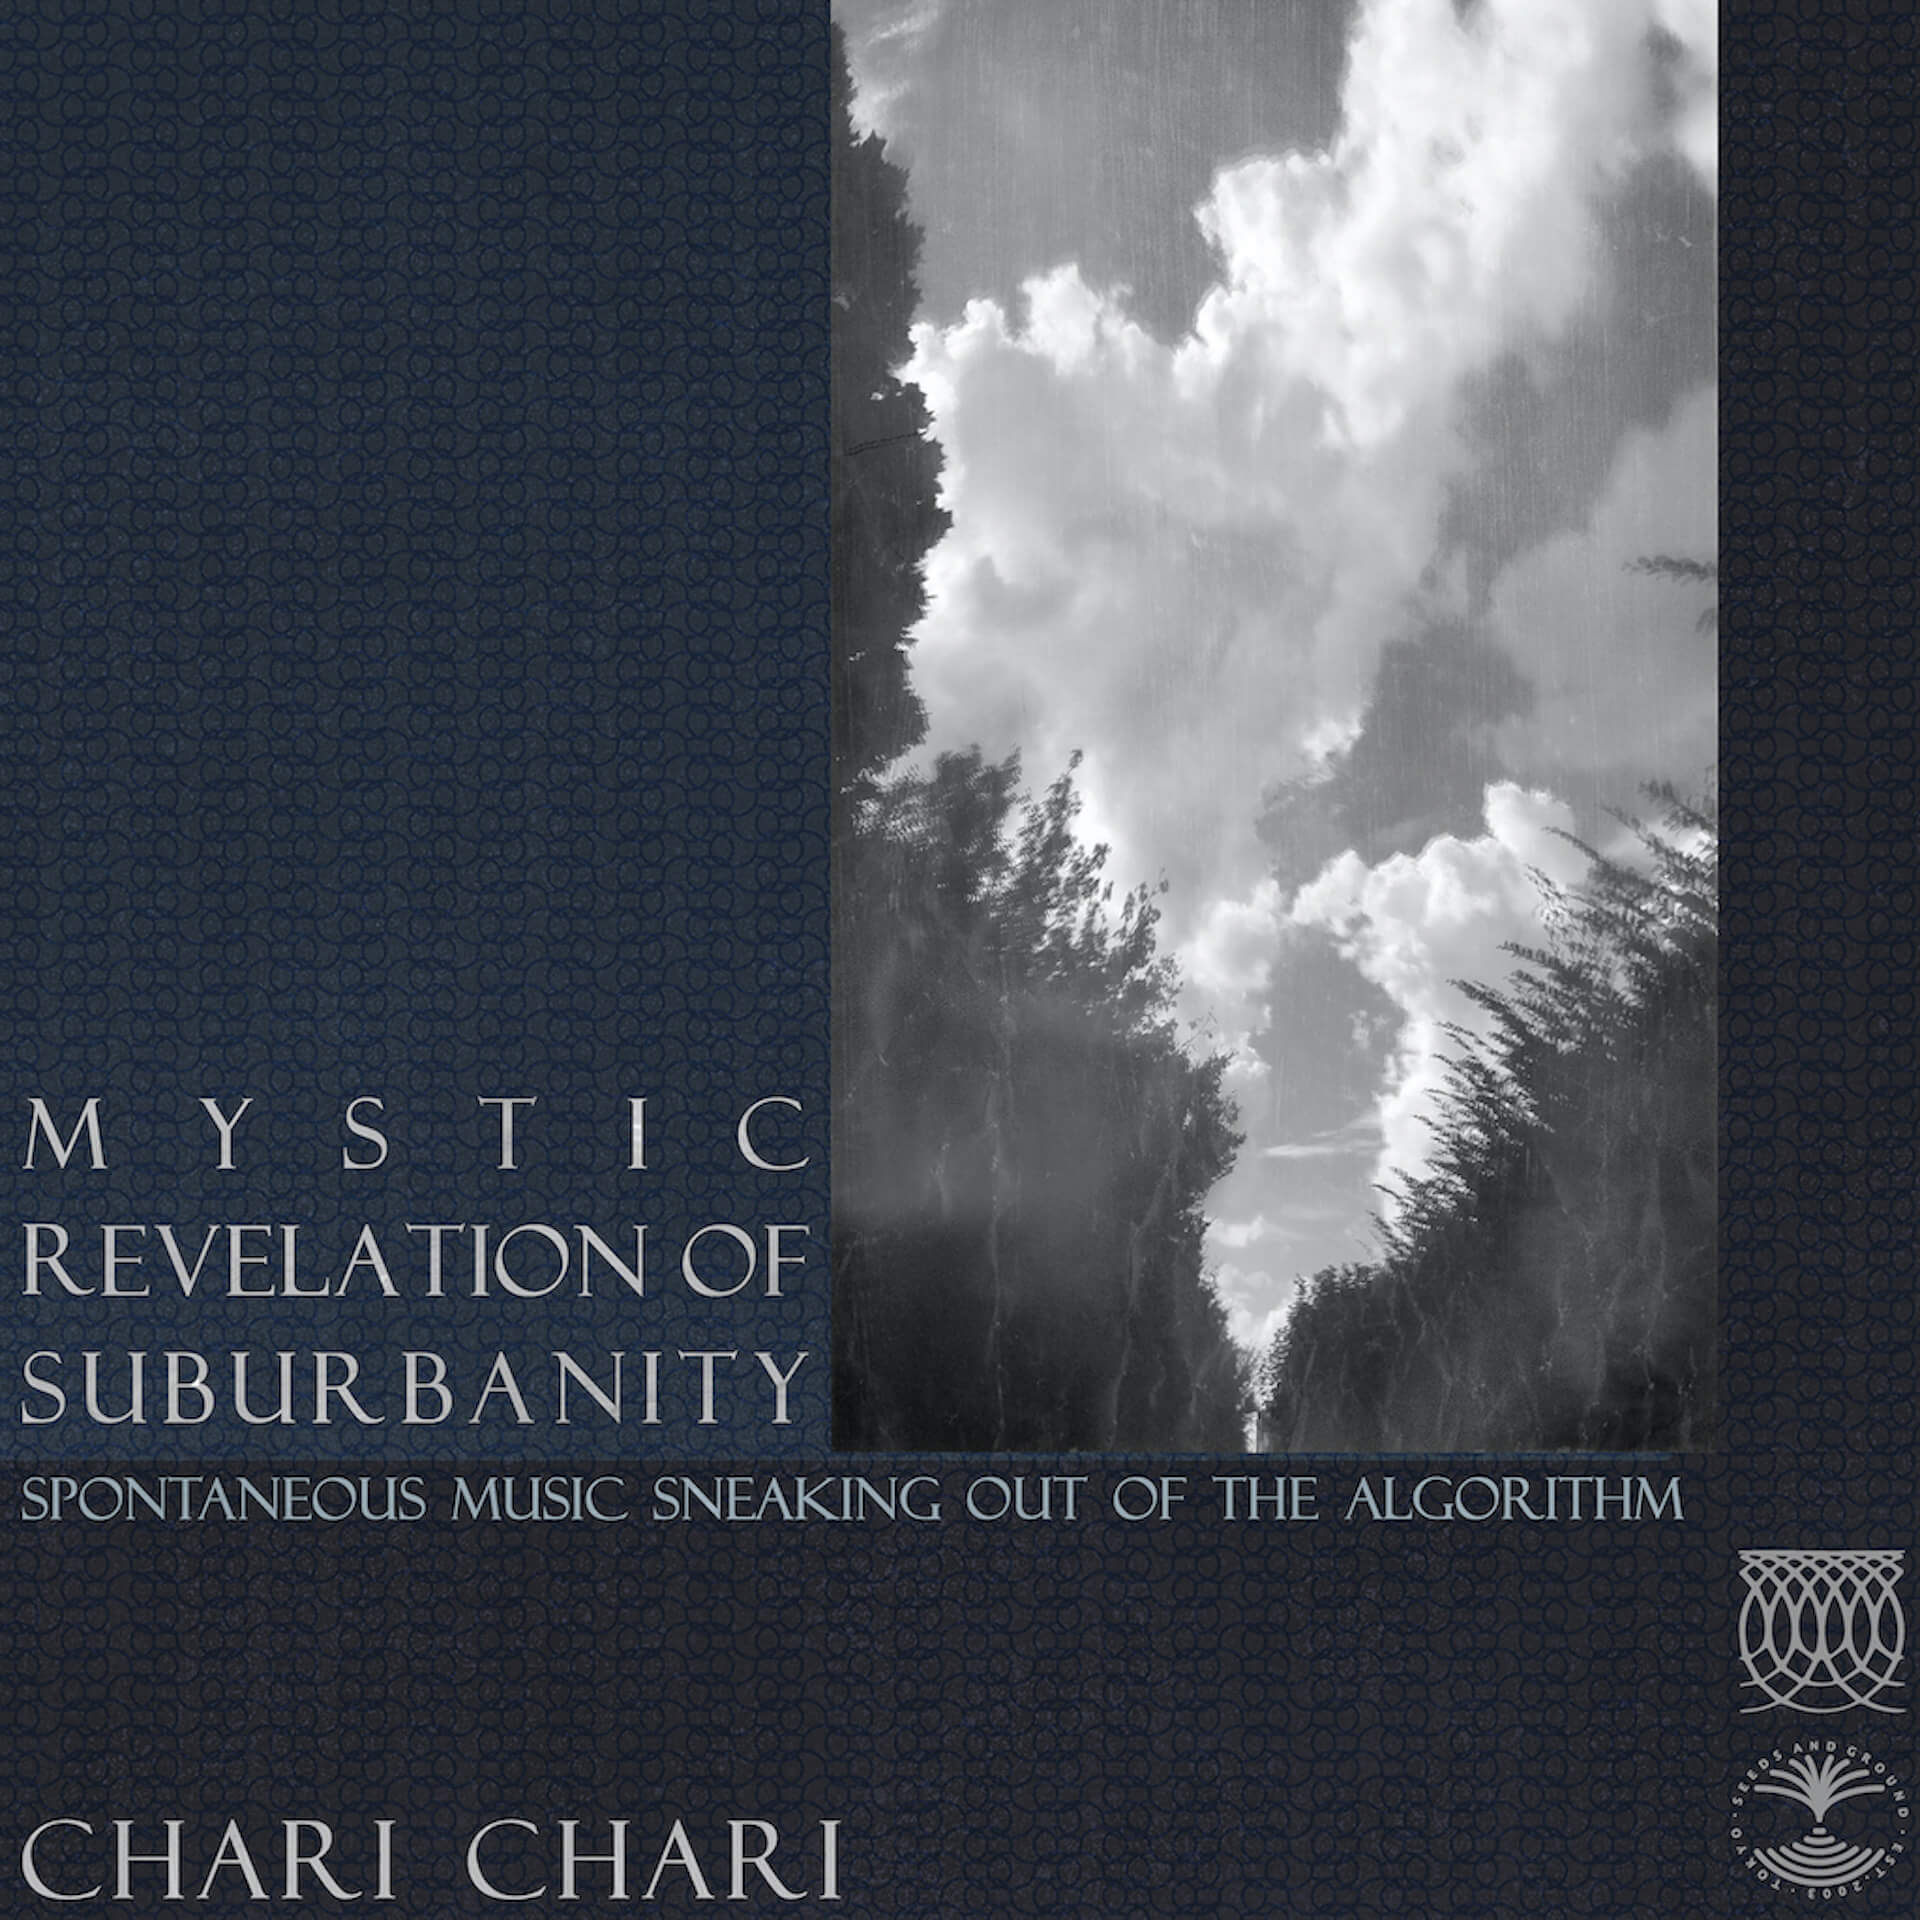 Kaoru InoueによるプロジェクトChari Chariがニューアルバム『Mystic Revelation of Suburbanity』を発表！